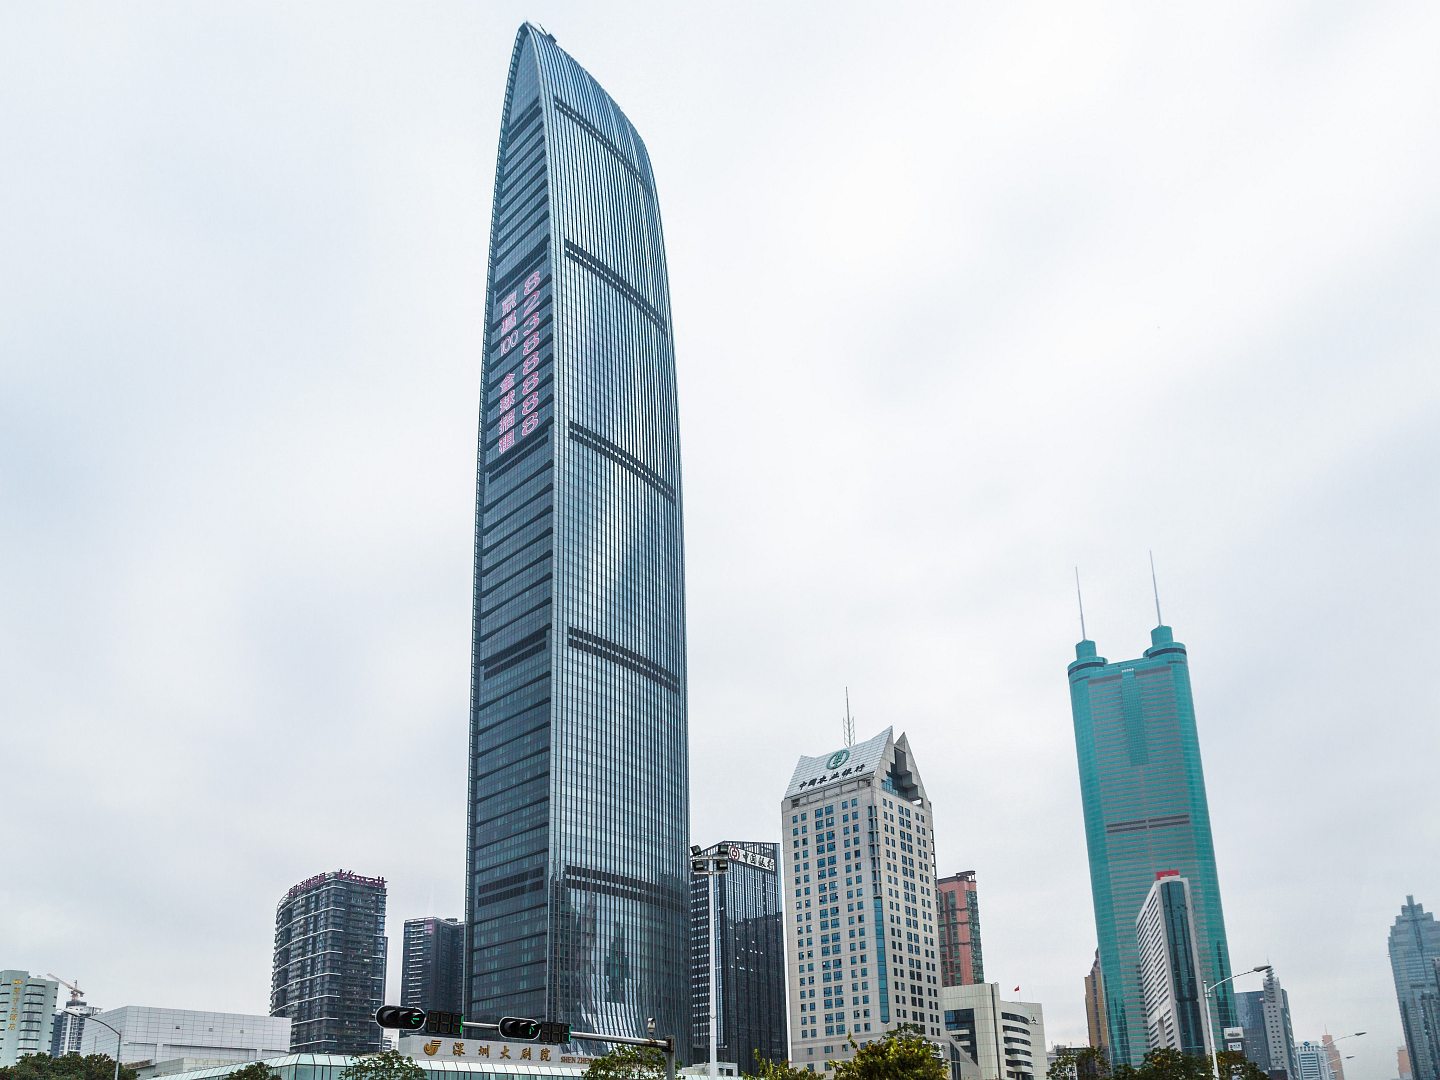 Tallest Building in Shenzhen